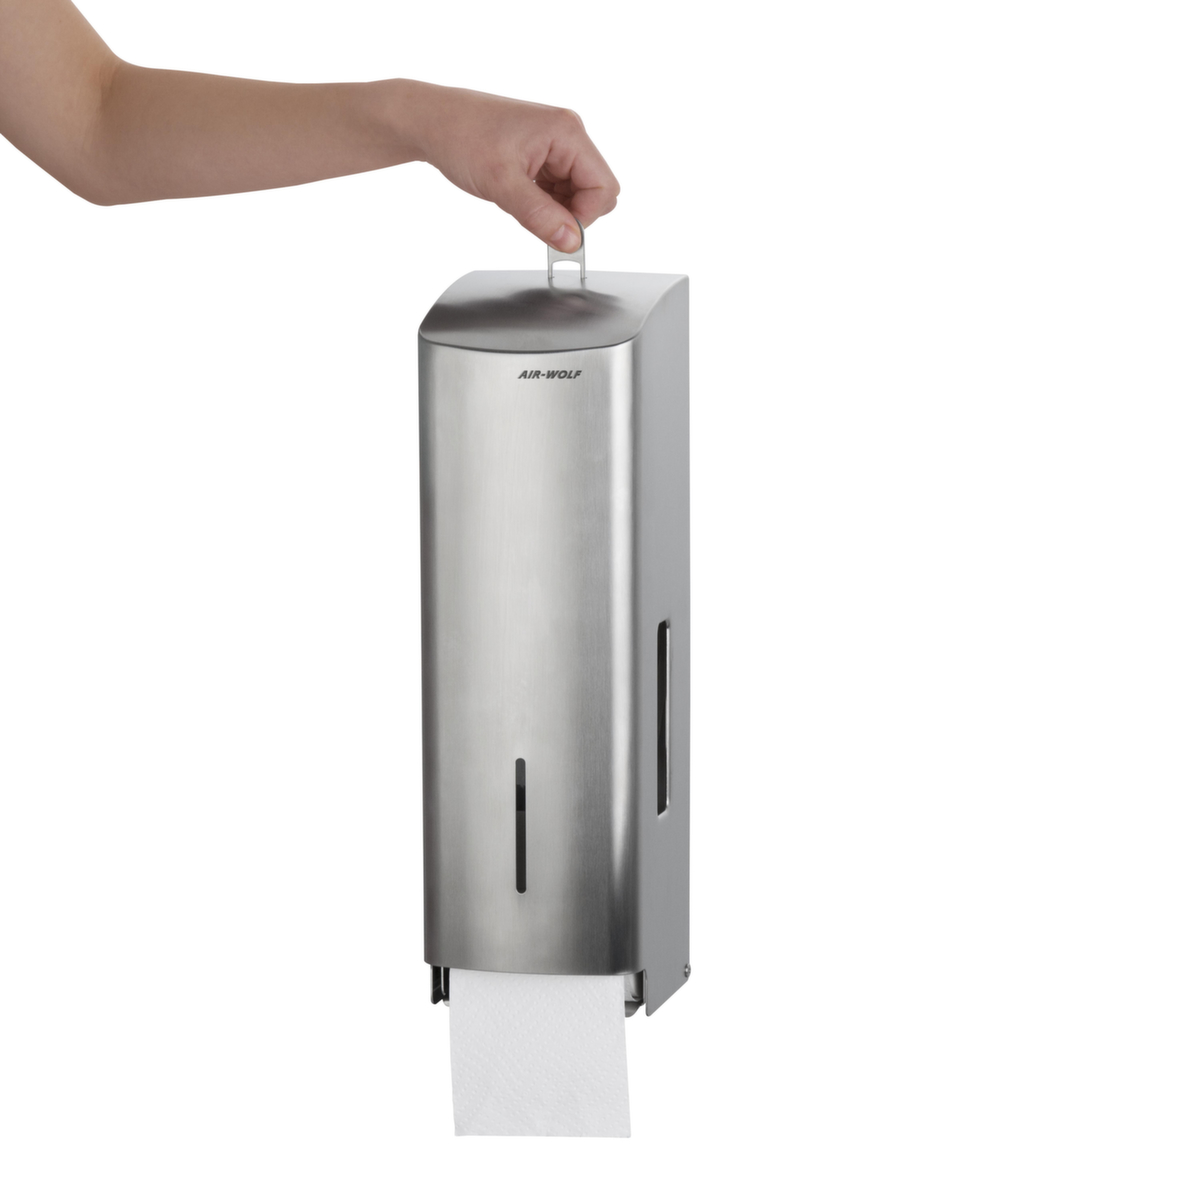 AIR-WOLF Toiletpapierautomaat Gamma voor 3 rollen, RVS  ZOOM